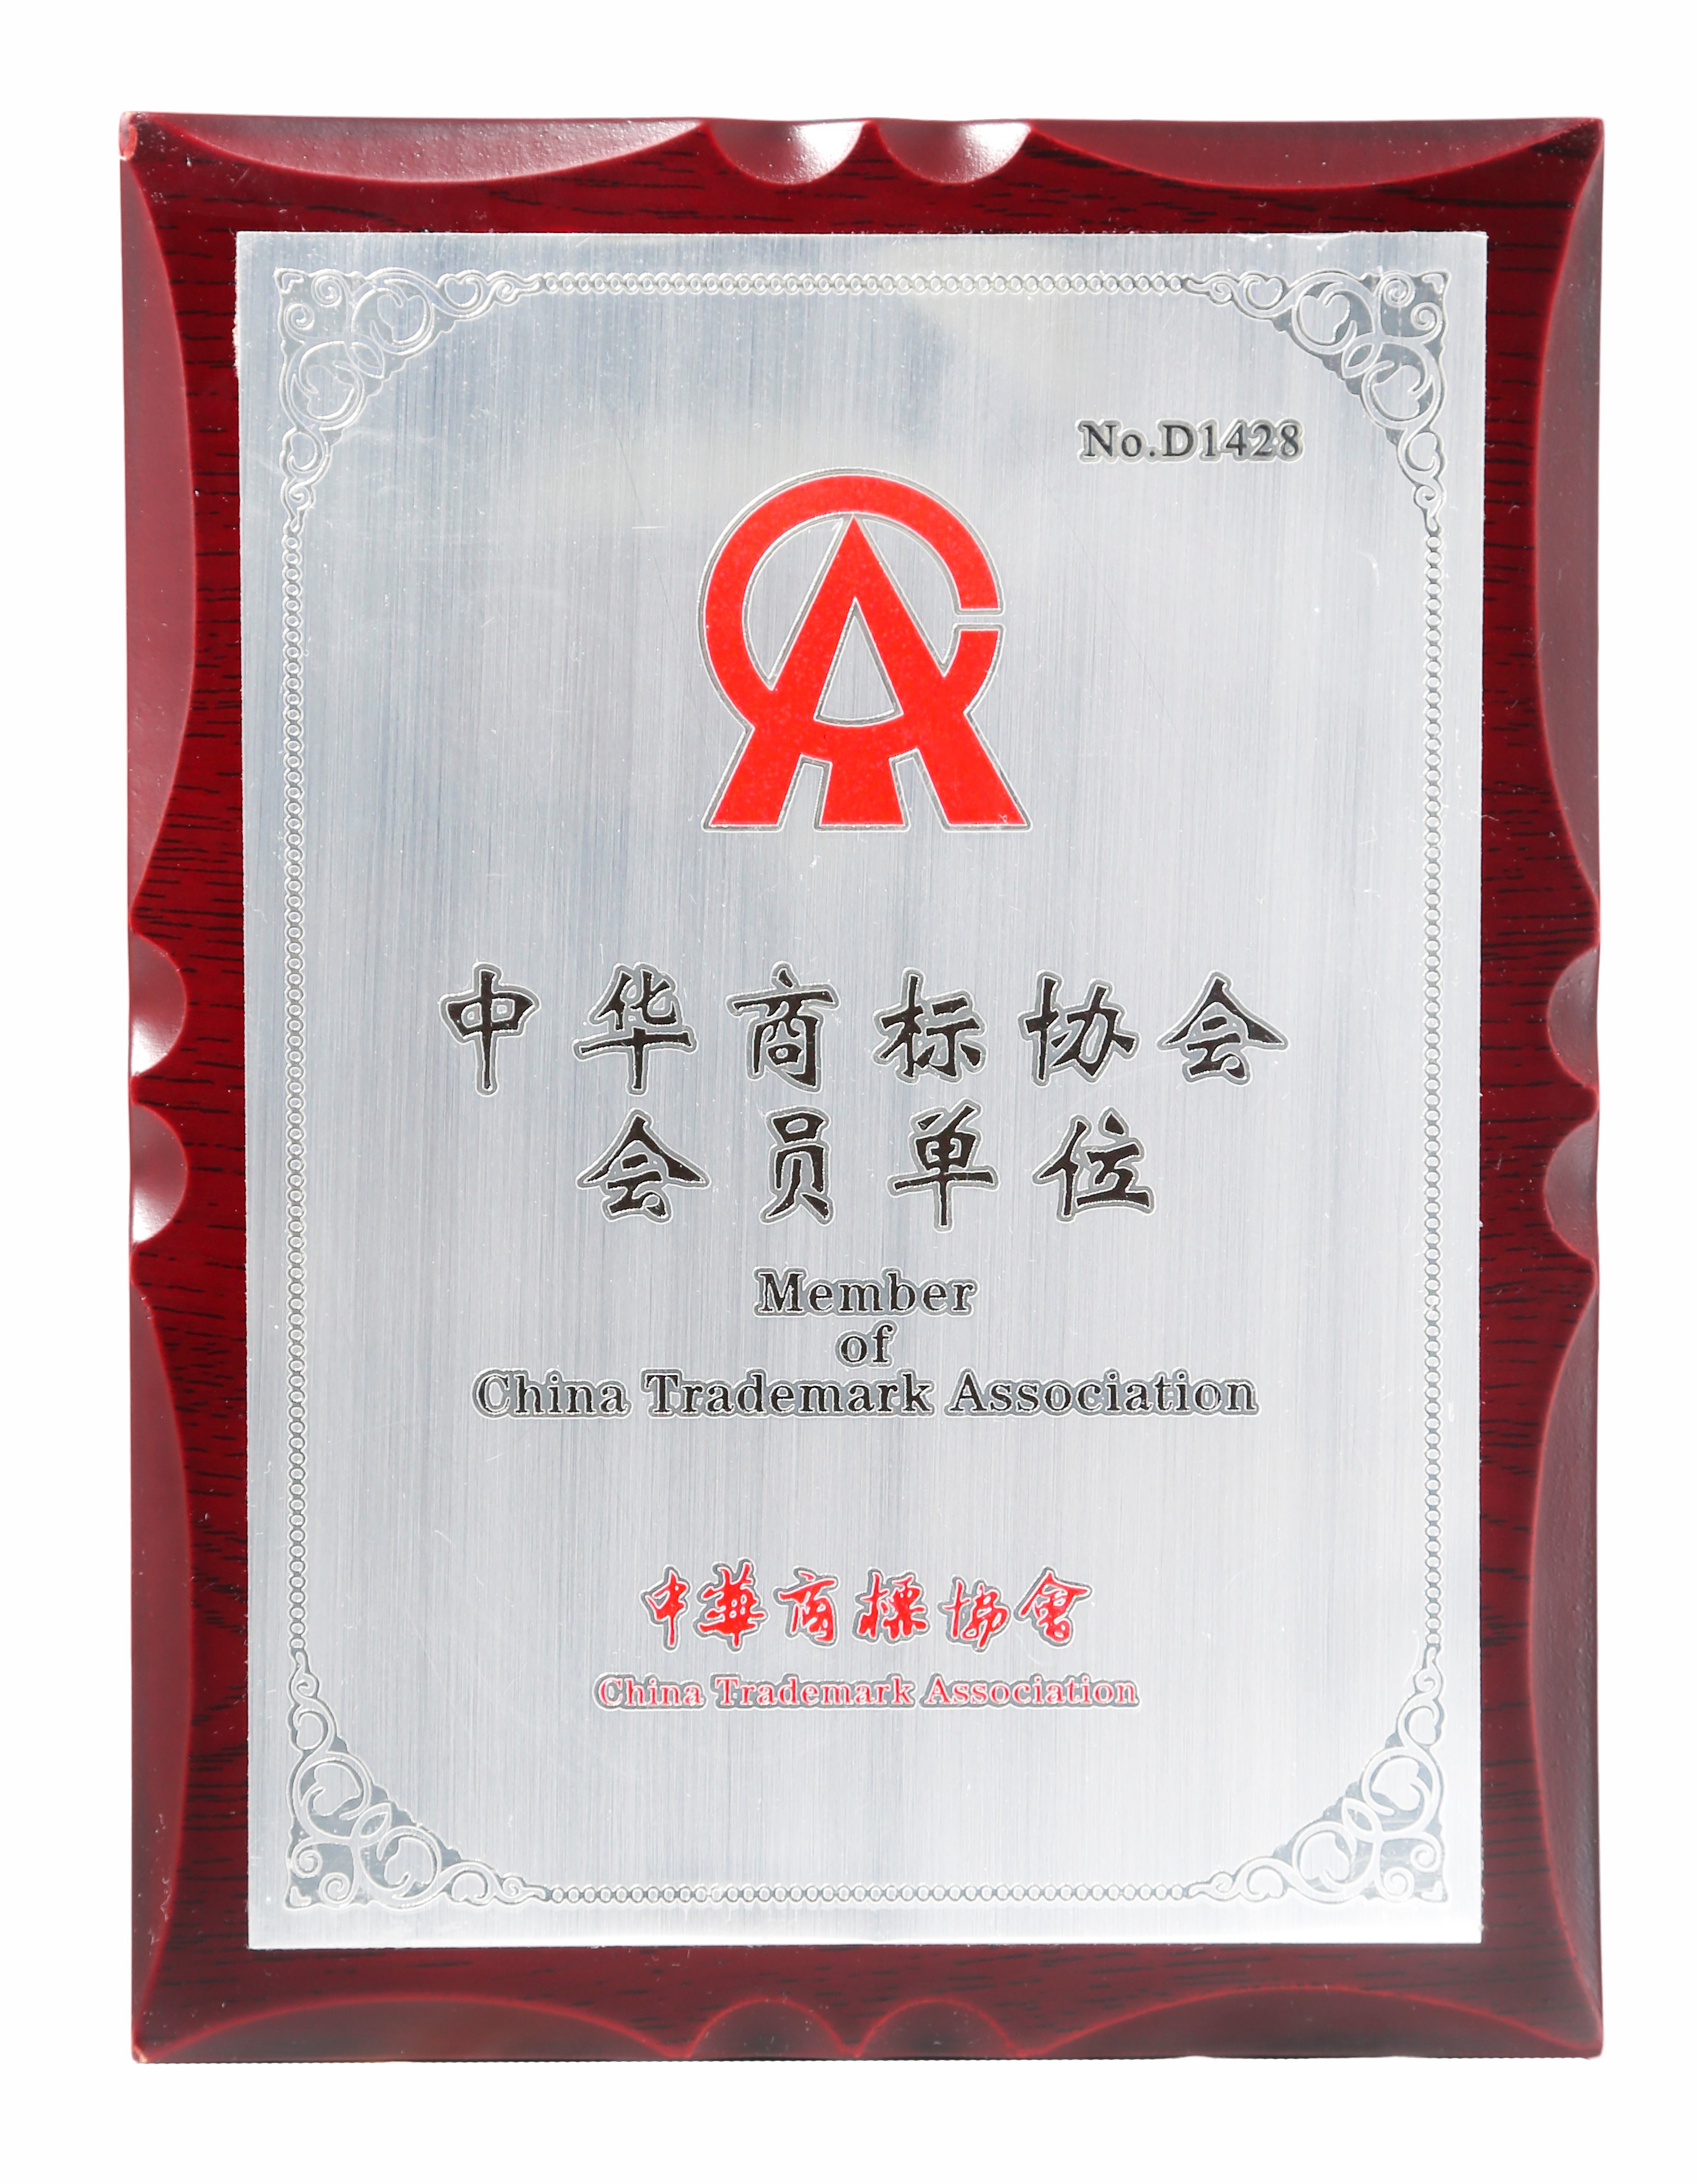 近日,恒昌公司正式加入中华商标协会,这是继加入北京知识产权保护